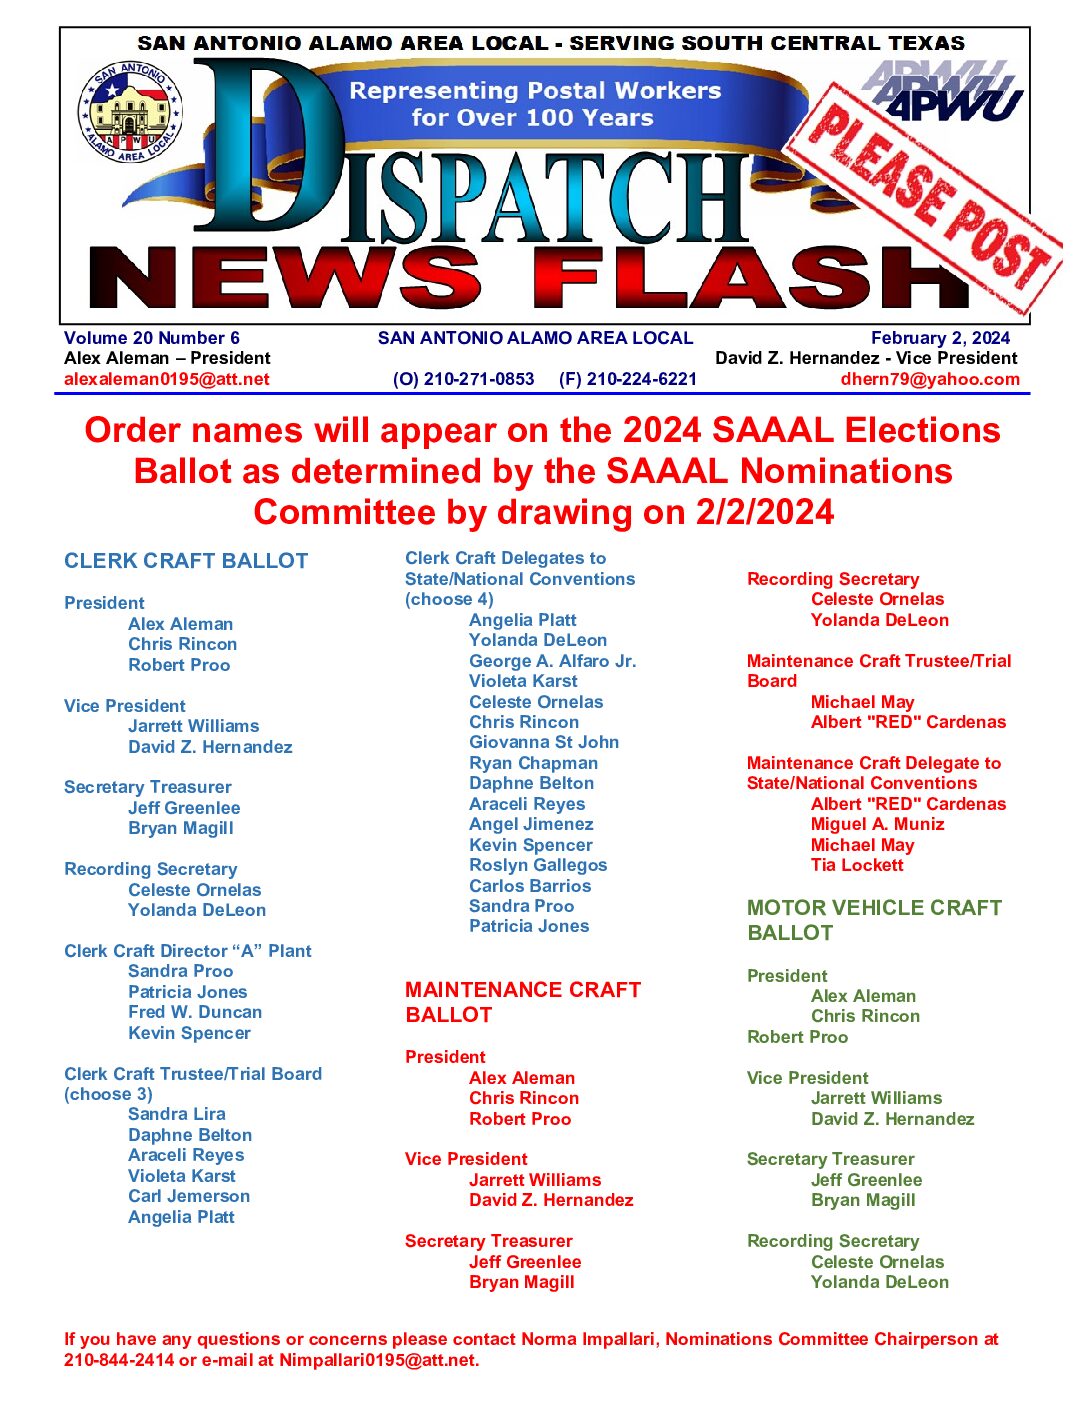 NewsFlash 20-6 SAAAL Election Ballot Order - 